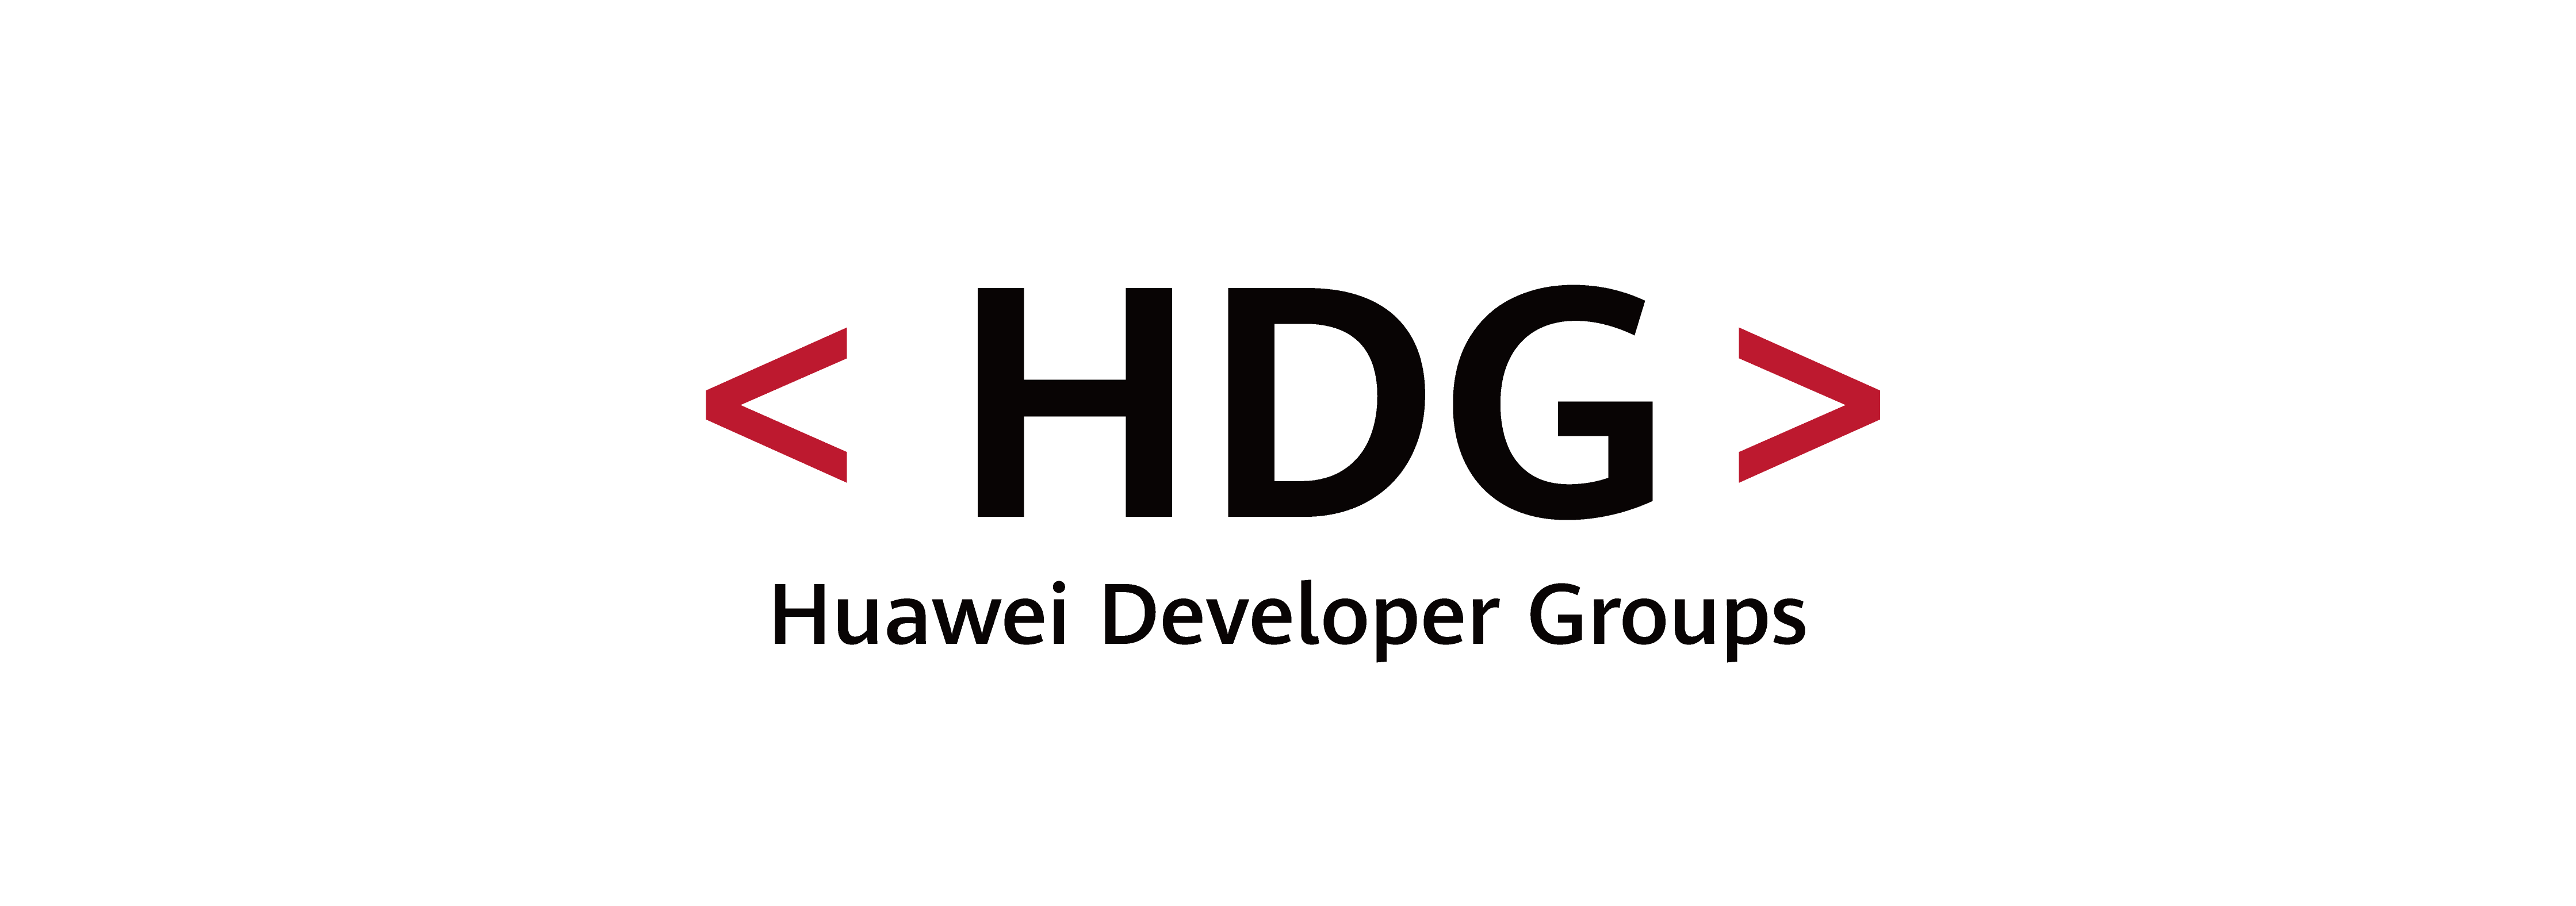 Realidad aumentada y videojuegos: el tercer webinar del programa para desarrolladores Huawei Developer Group